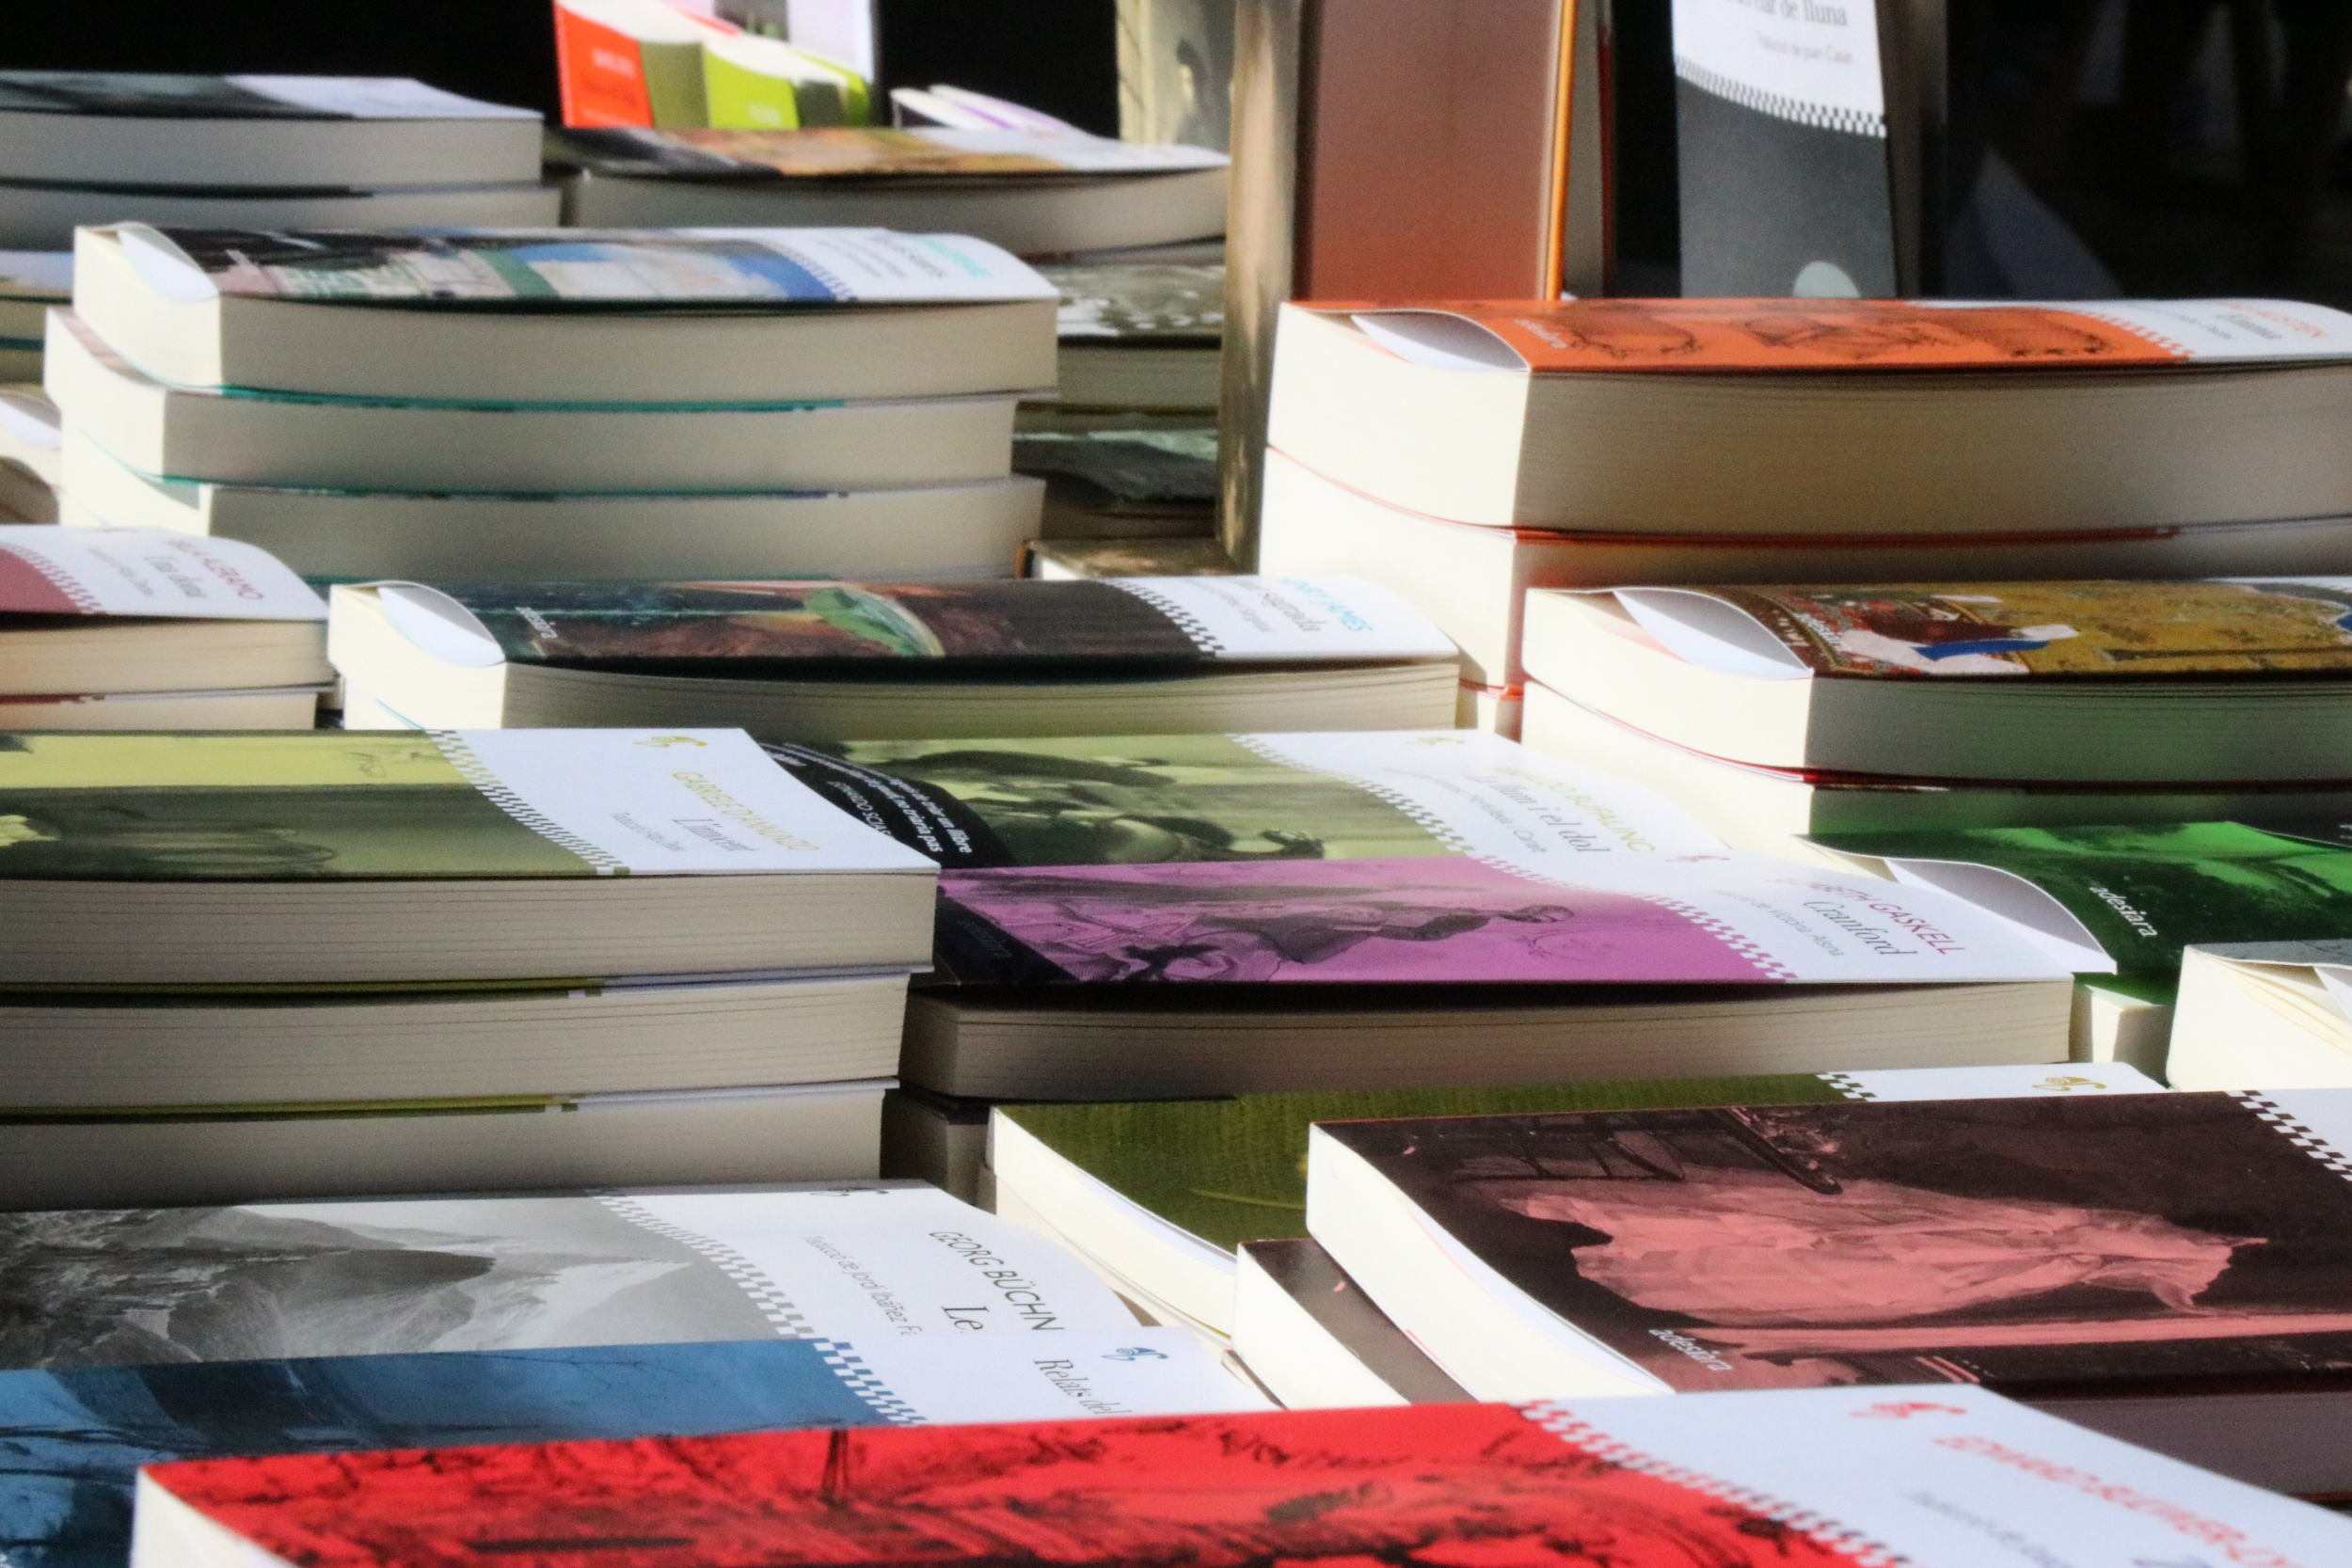 Fin de semana de librerías abiertas antes de Sant Jordi